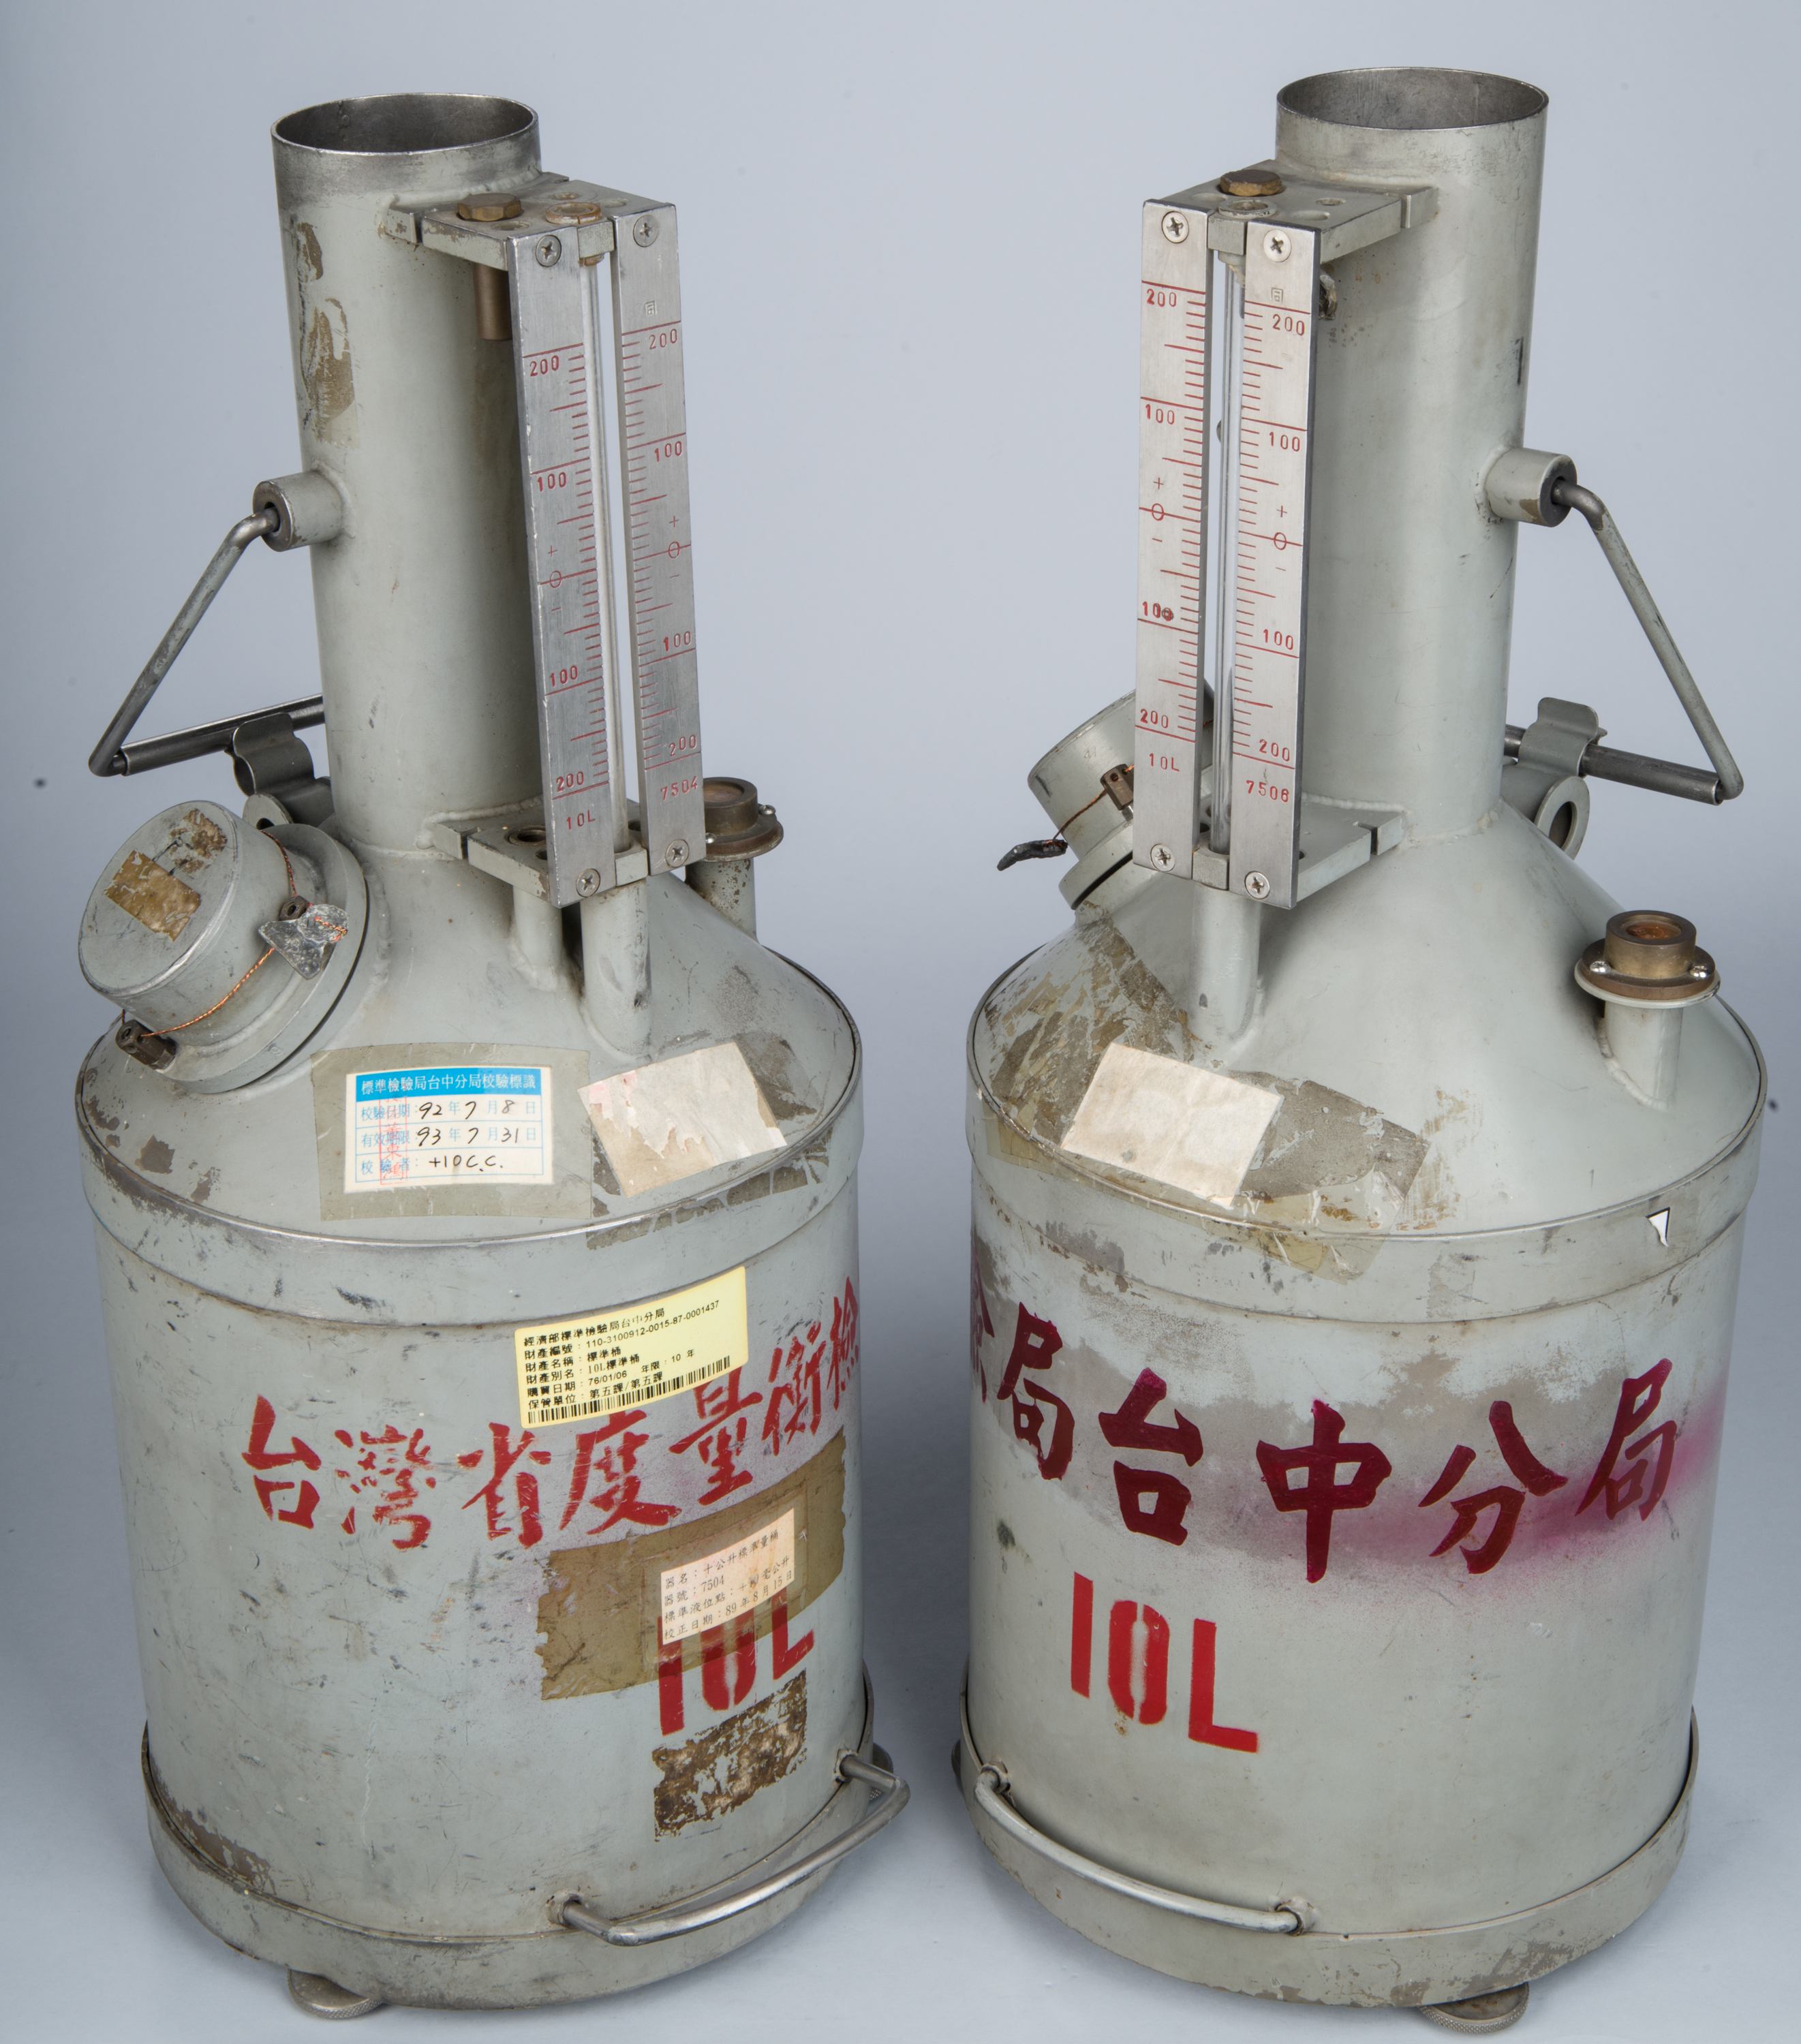 標準量桶（10公升  新式  較高）,共3張圖片